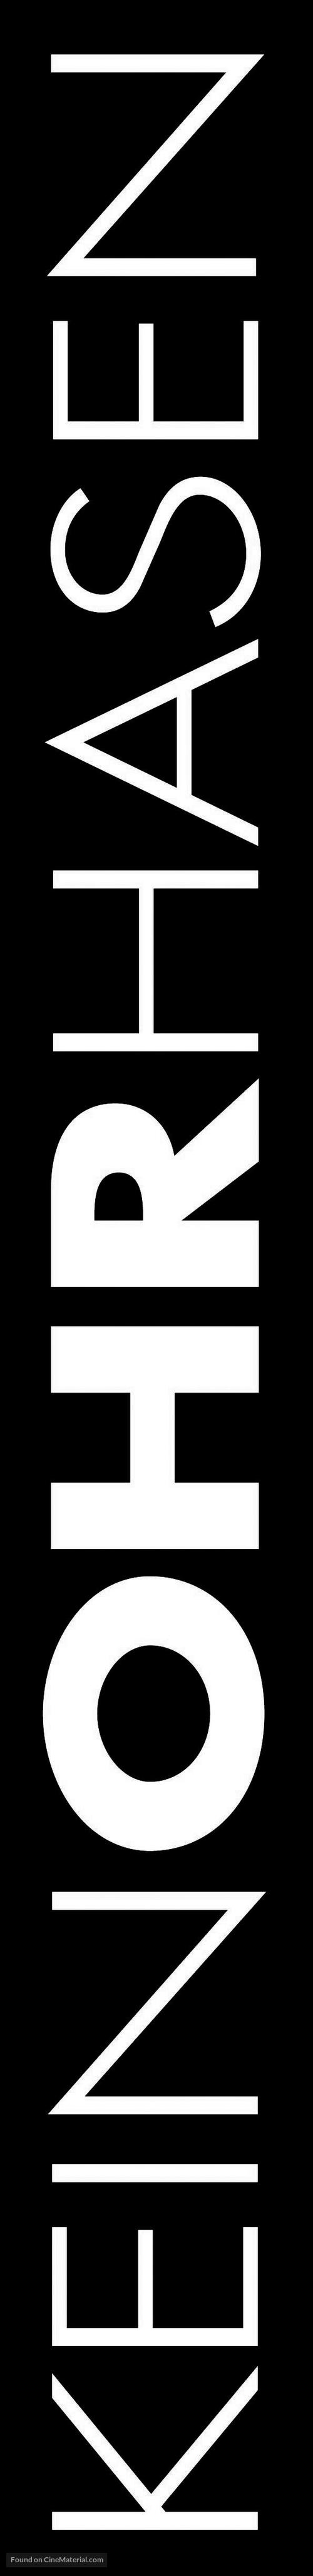 Keinohrhasen - Swiss Logo